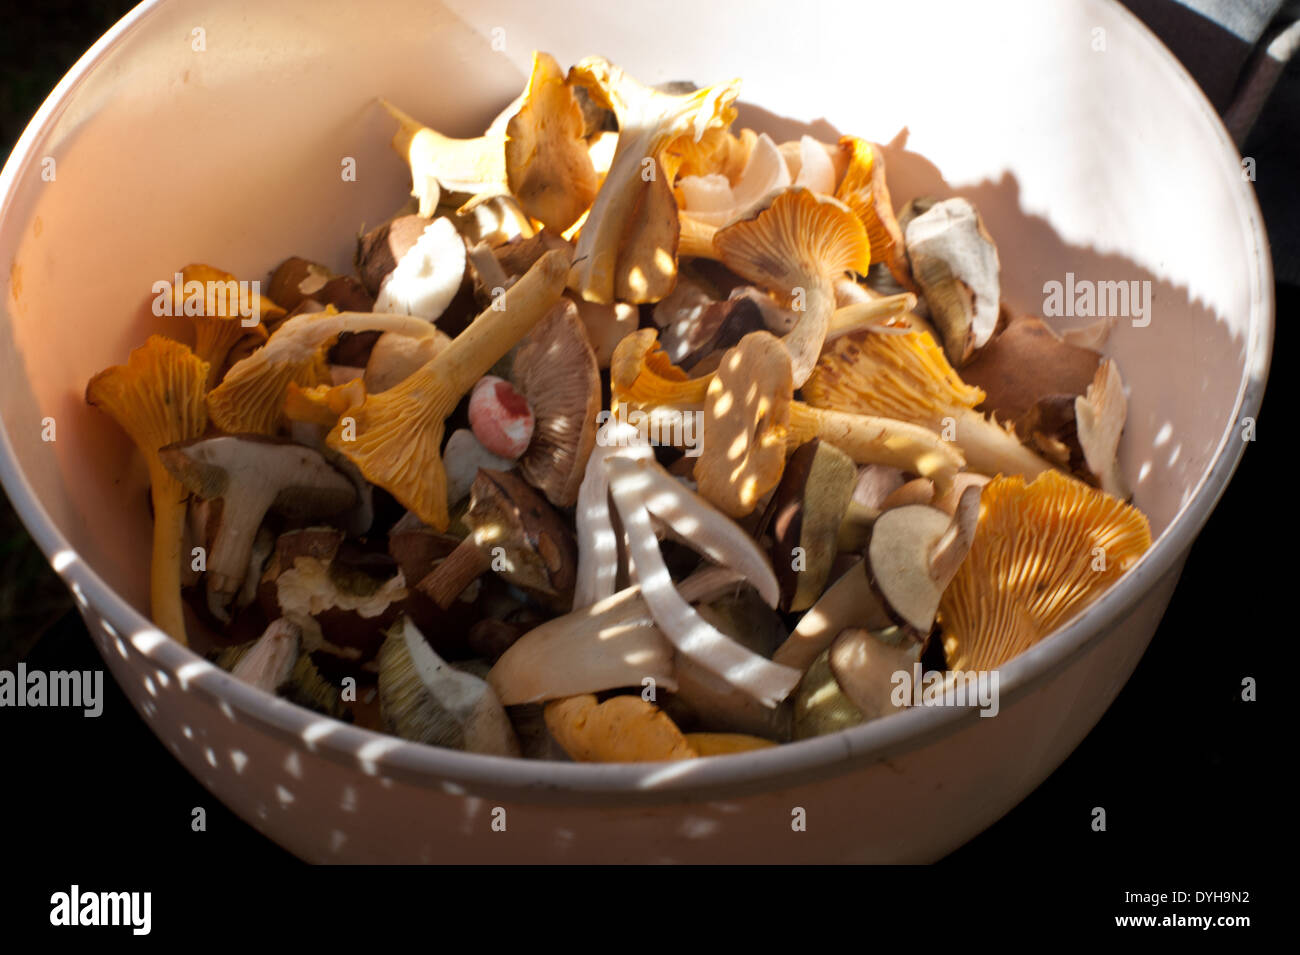 Eine Schüssel mit frisch gepflückten Waldpilzen, bereit, gereinigt und gekocht werden. Stockfoto